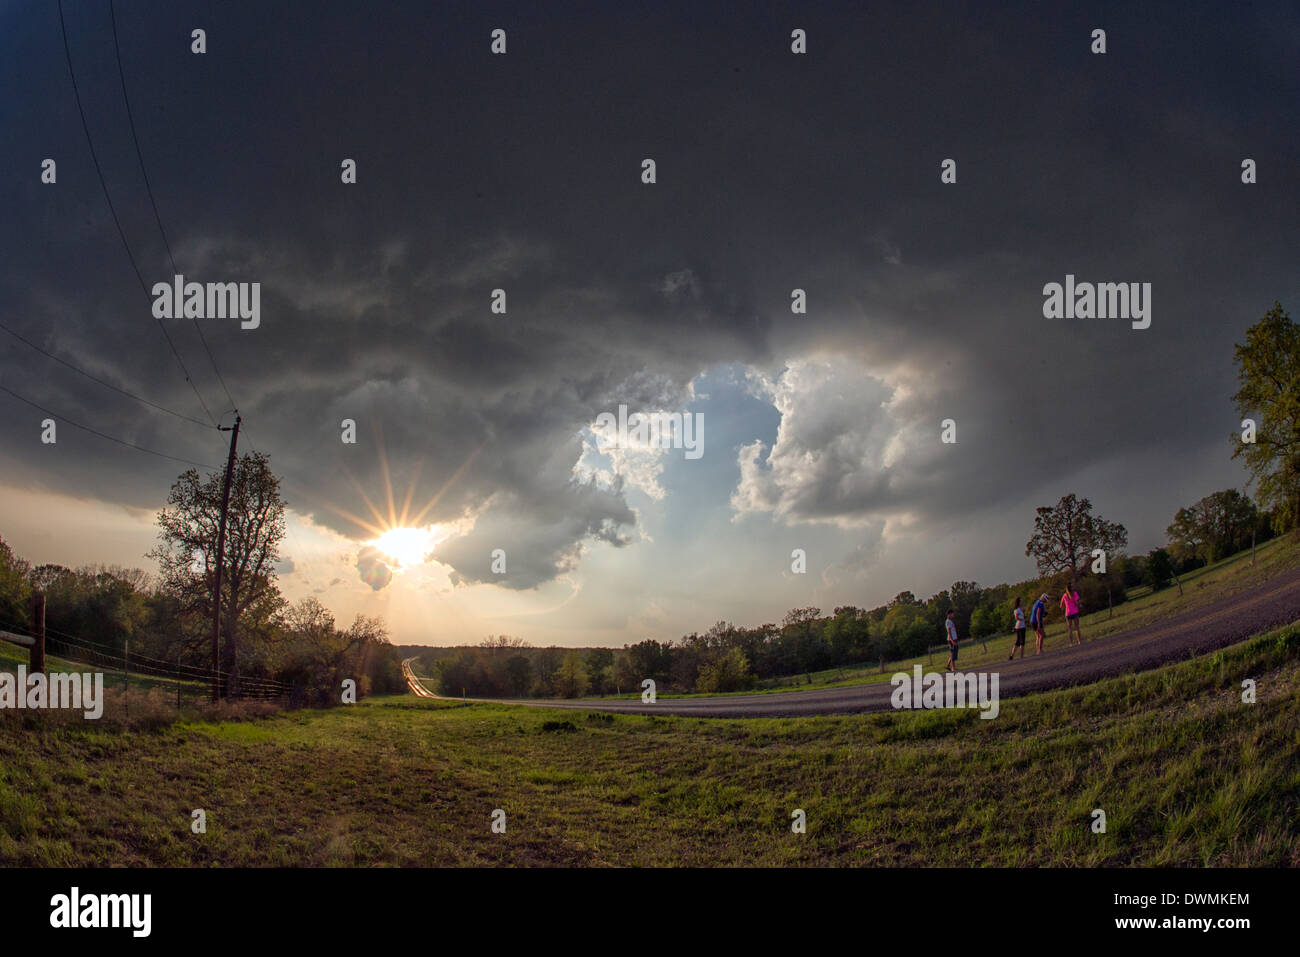 Dramatischen Wolkenformationen am Rand von einem Abend Gewitter in ländlichen Oklahoma, Vereinigte Staaten von Amerika, Nordamerika Stockfoto